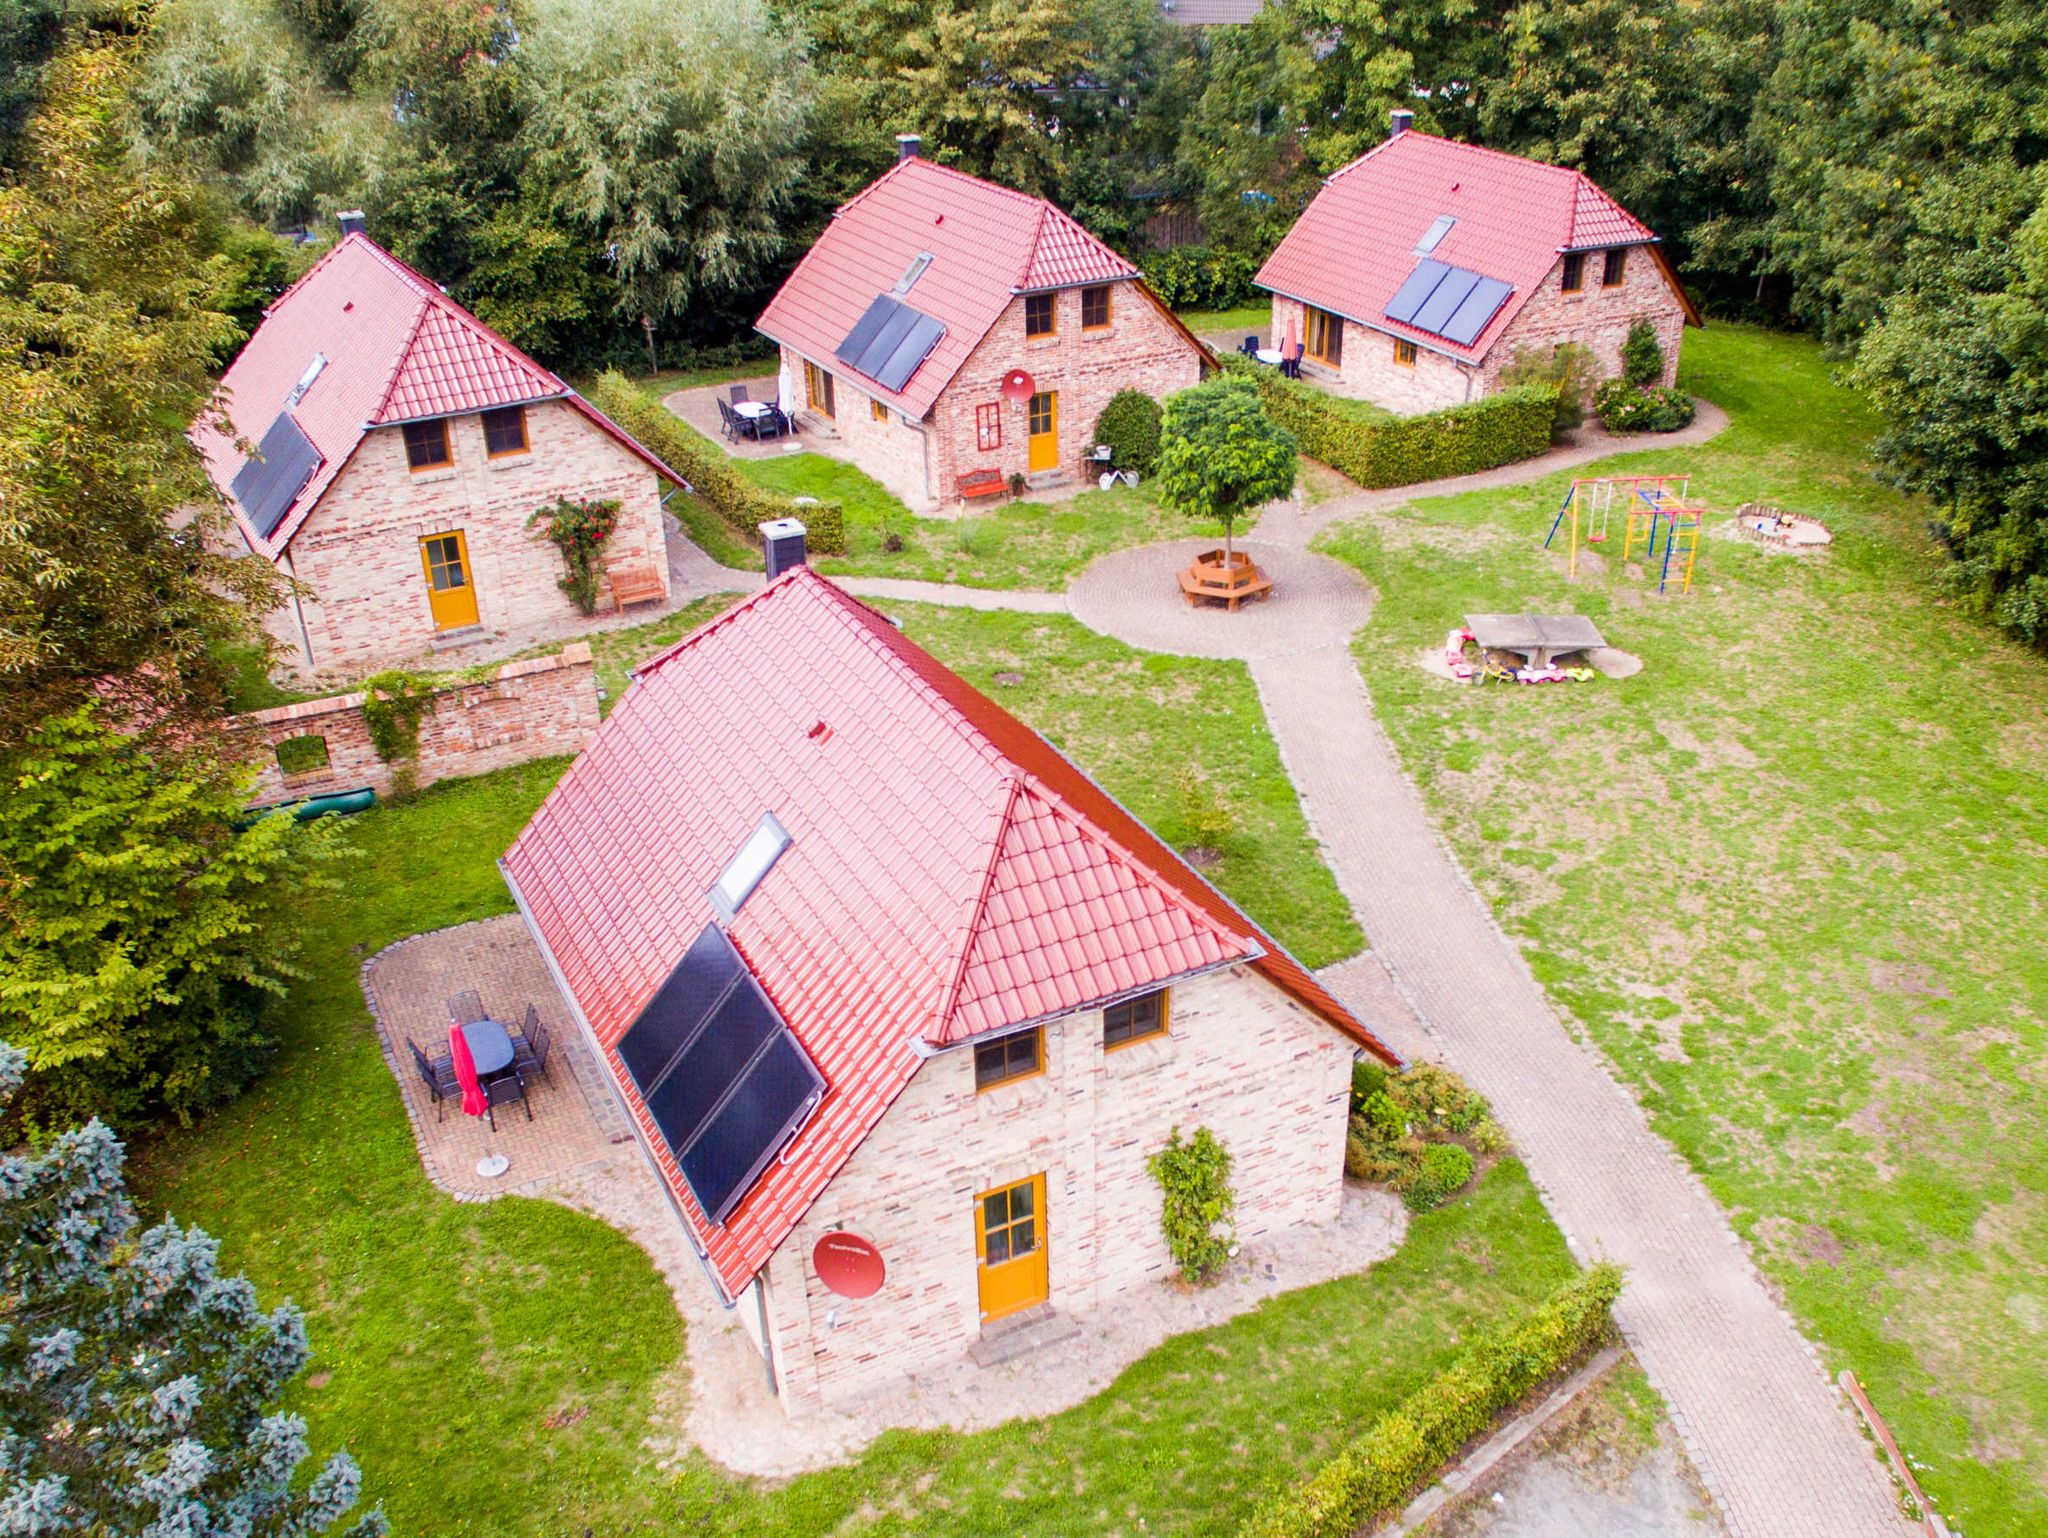 Häuser mit Solardach zur Energiegewinnung